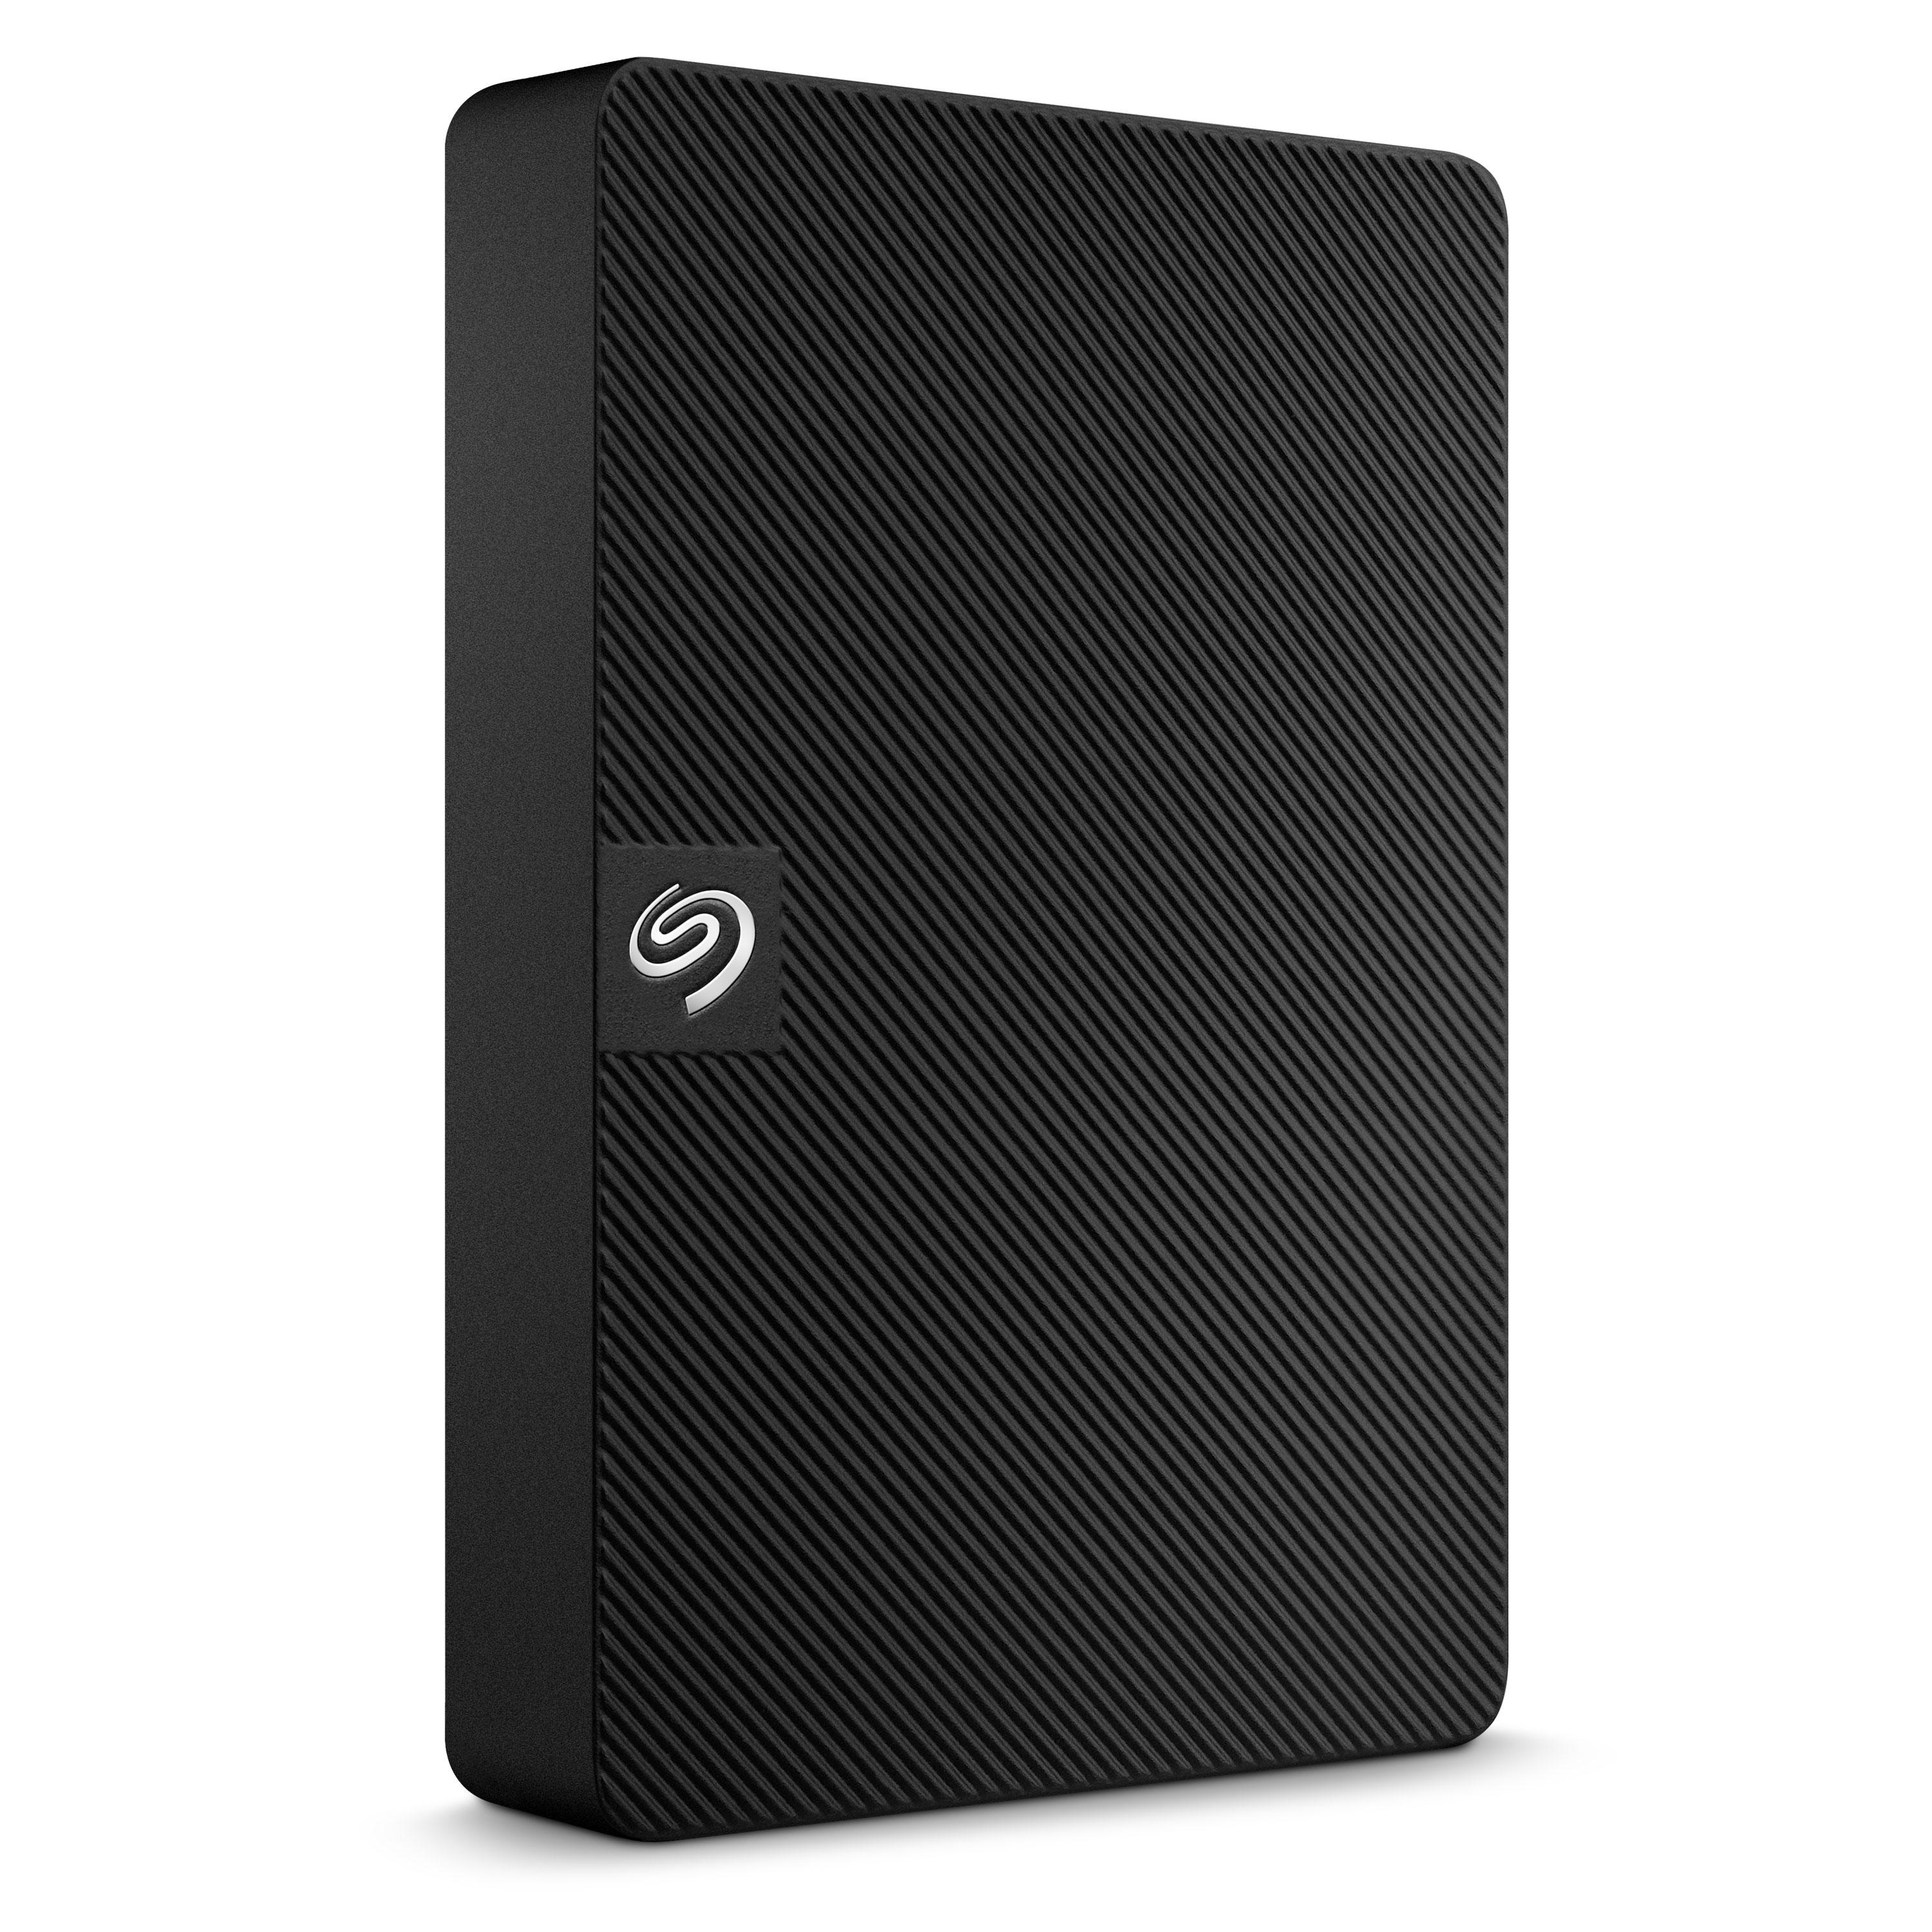 SEAGATE Expansion Portable Hard Drive - 5 TB, Black, Black